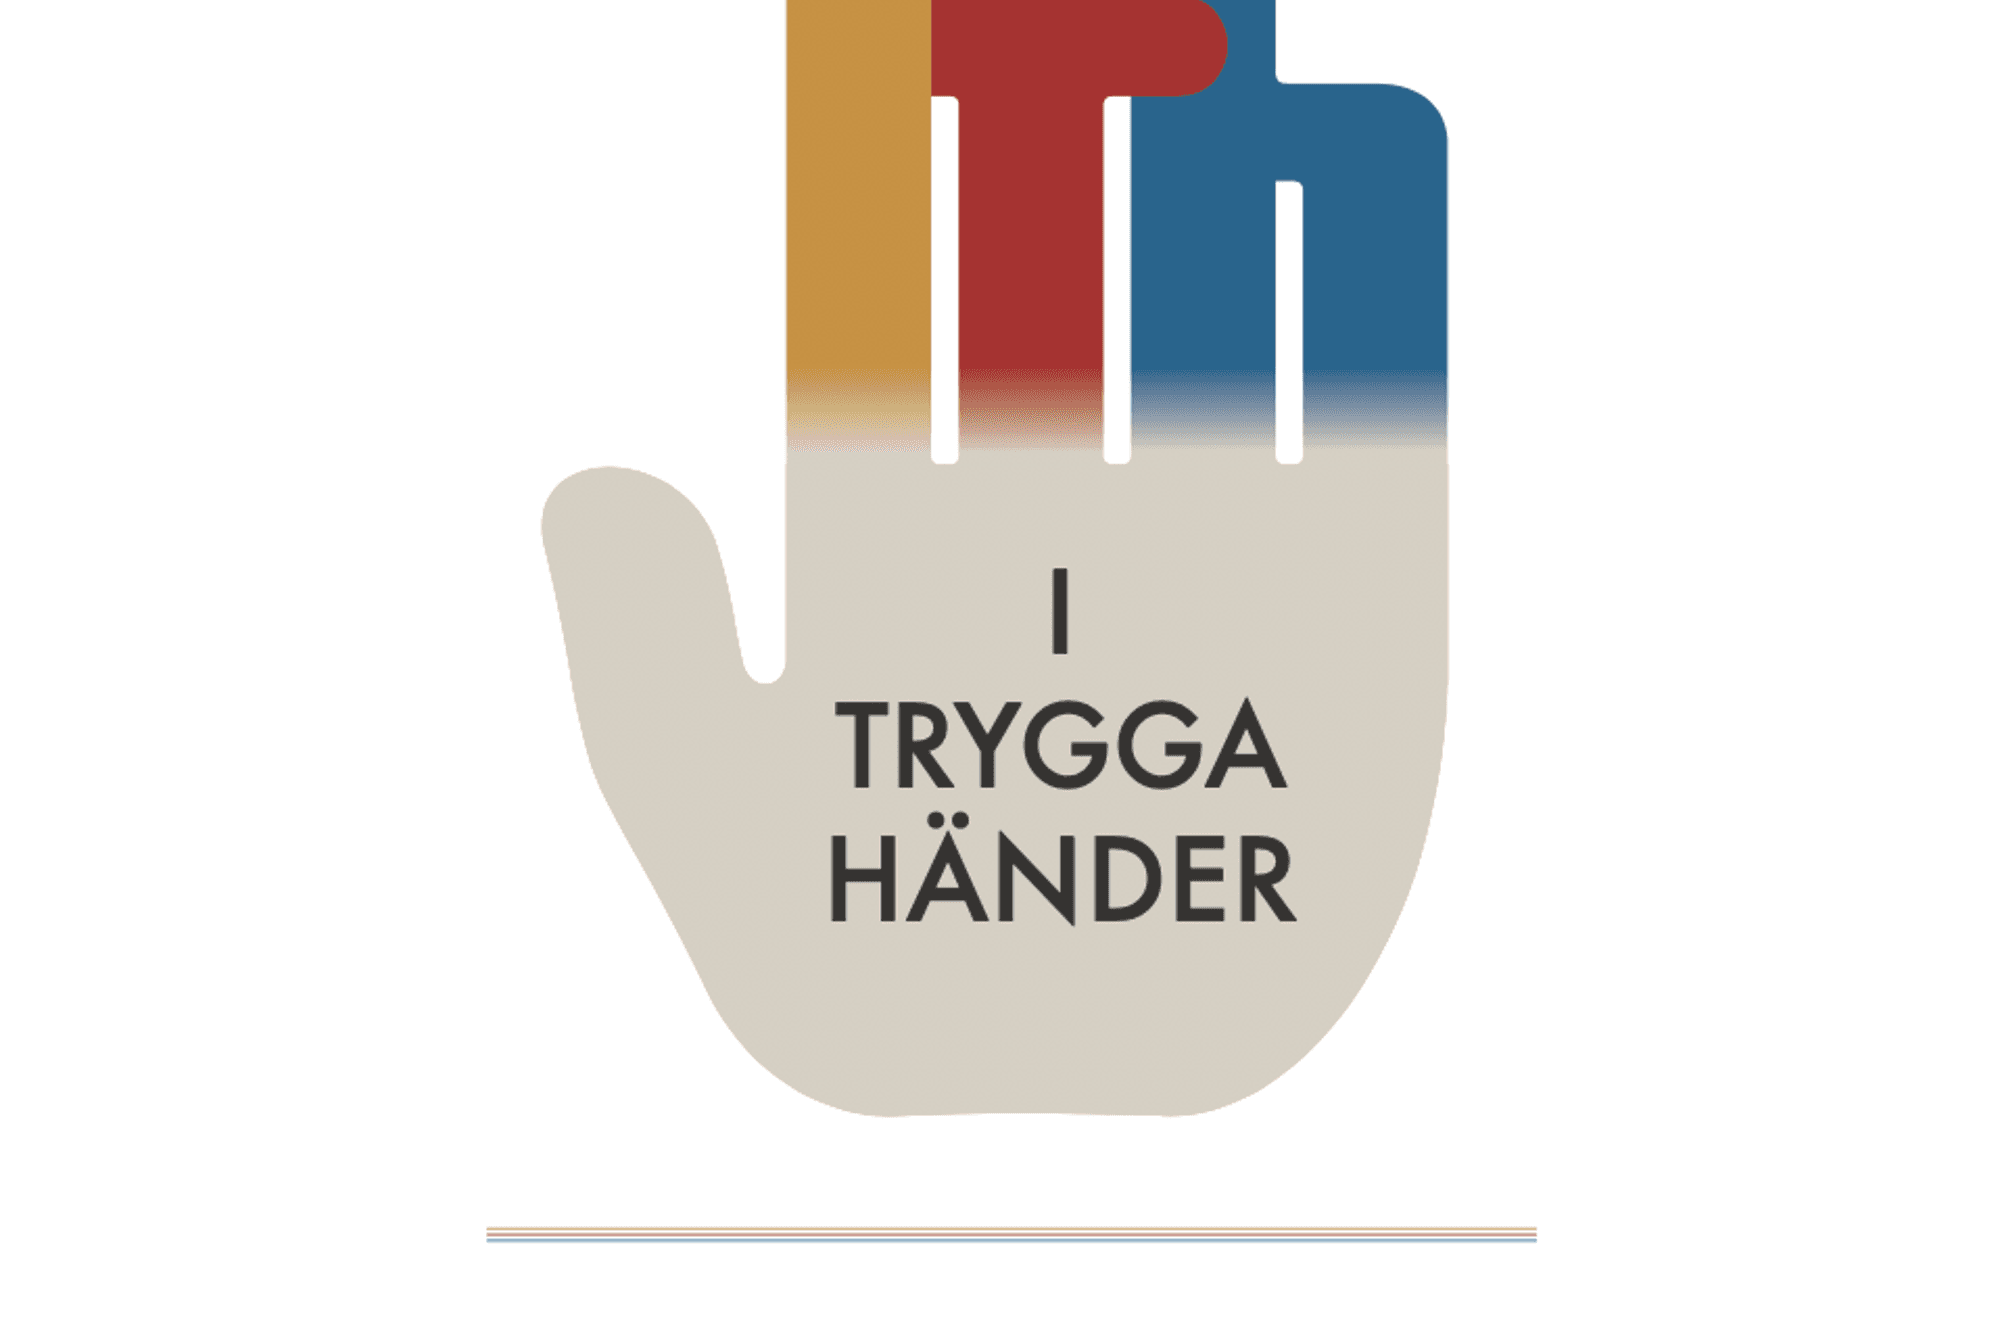 I Trygga Händers logotyp. Loggan är i form av en hand, med texten "I Trygga Händer" på handflatan. Längst ned står det "Etisk vägledning för arbete bland barn och unga".